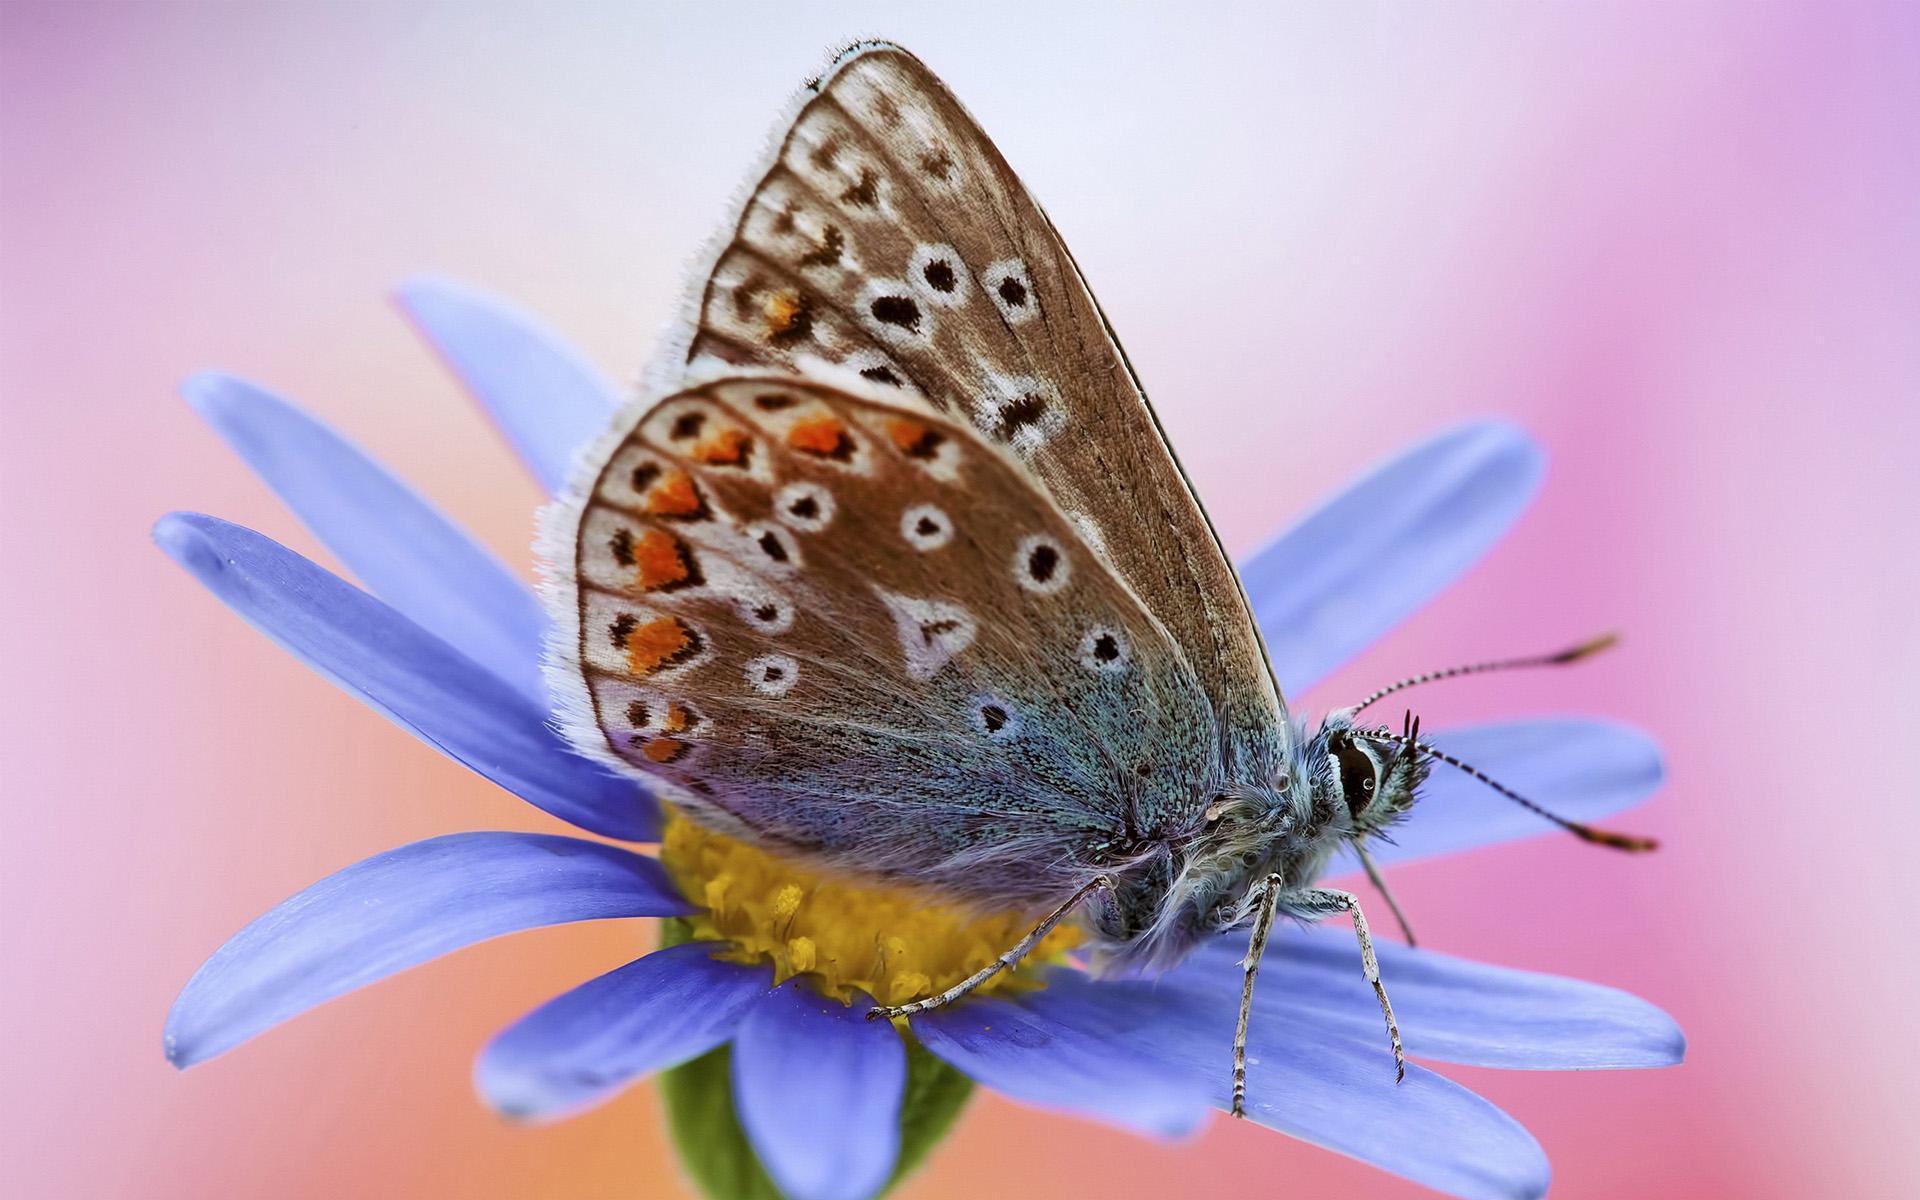 图集春天将至给大家分享一组好看的蝴蝶桌面壁纸